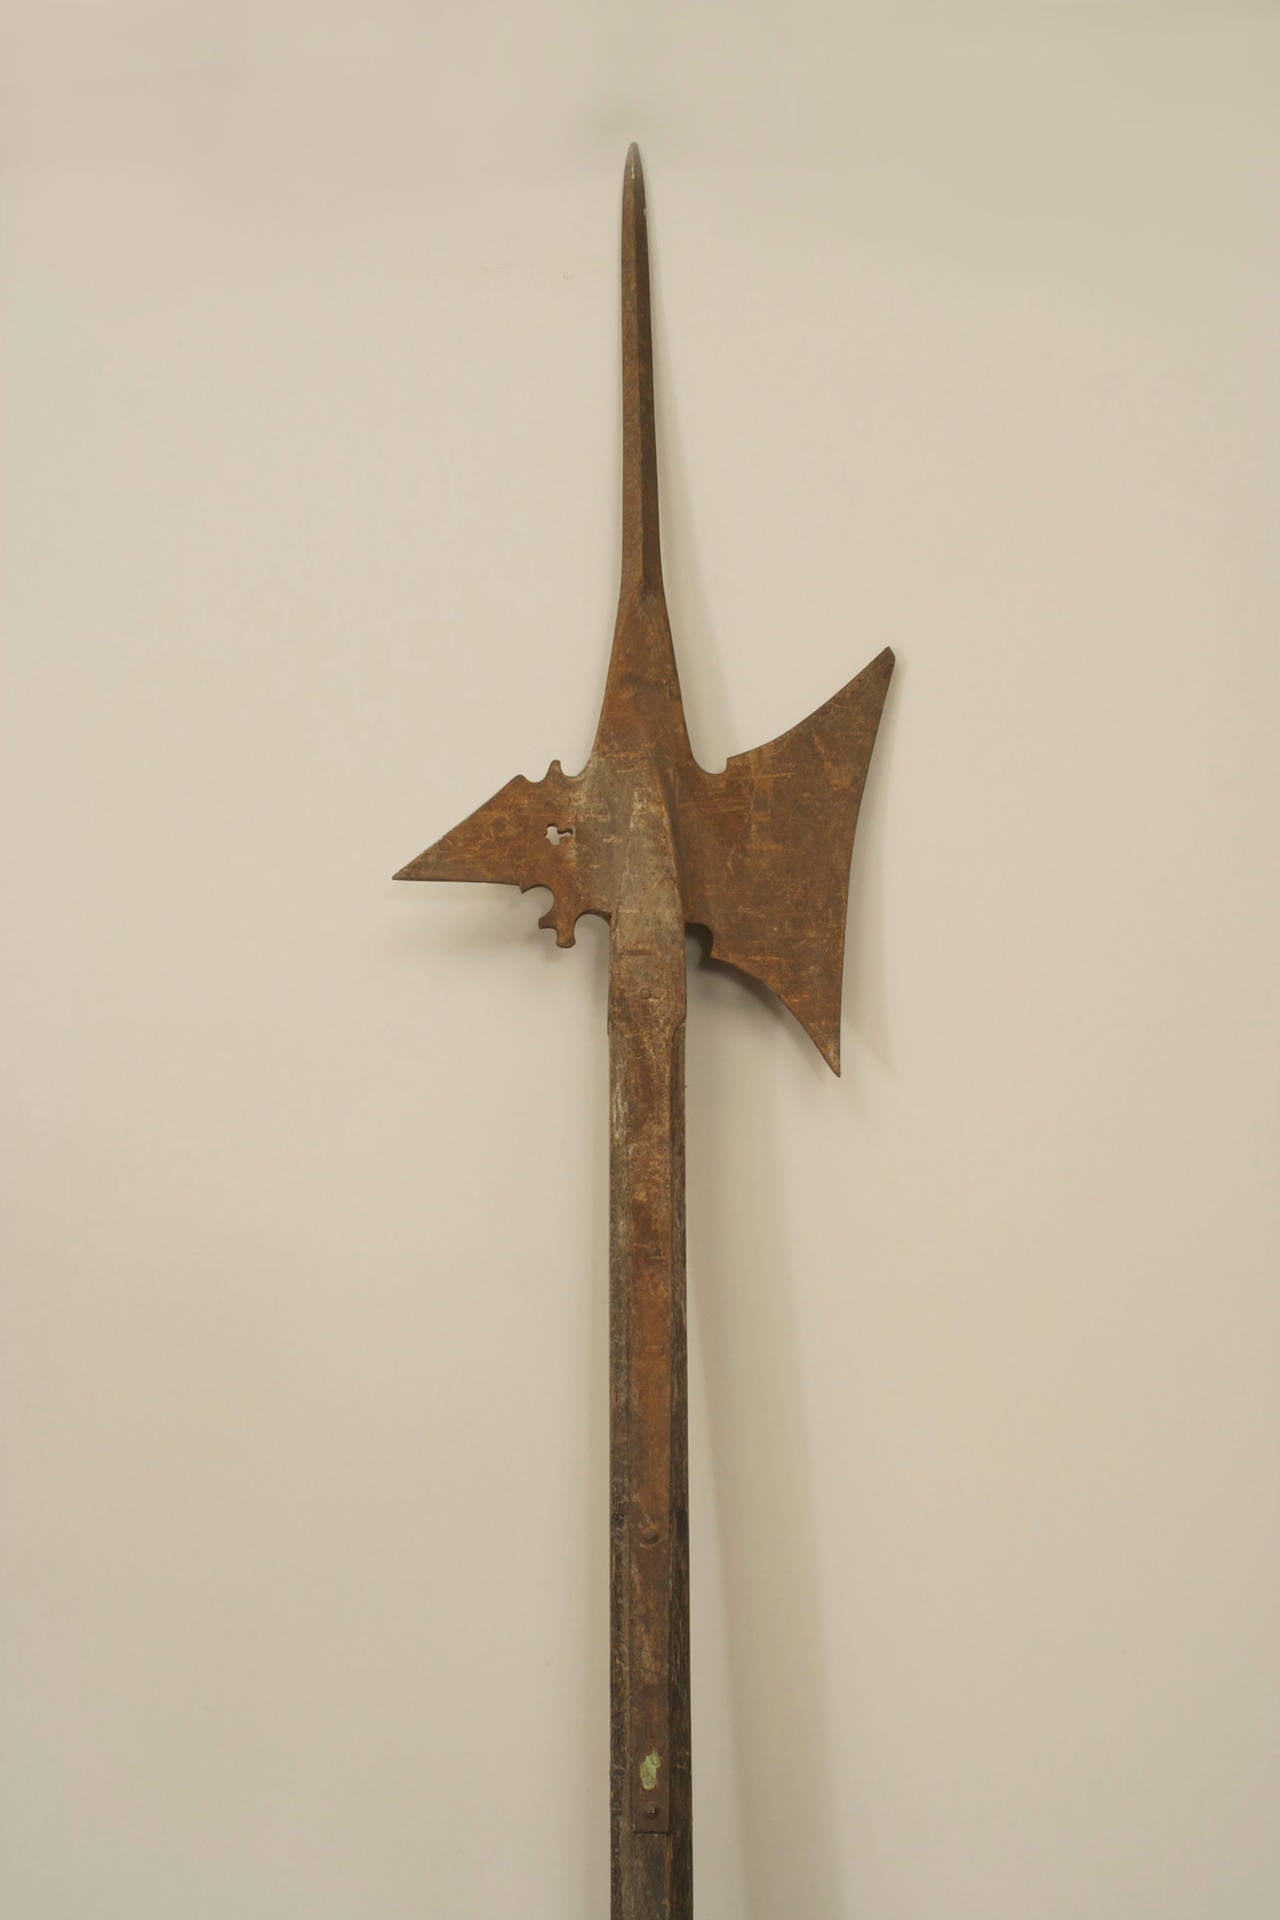 Lance hallebarde de style Renaissance anglaise avec un manche en bois à huit côtés avec des têtes de clous et une lame en forme de hache en fer.
